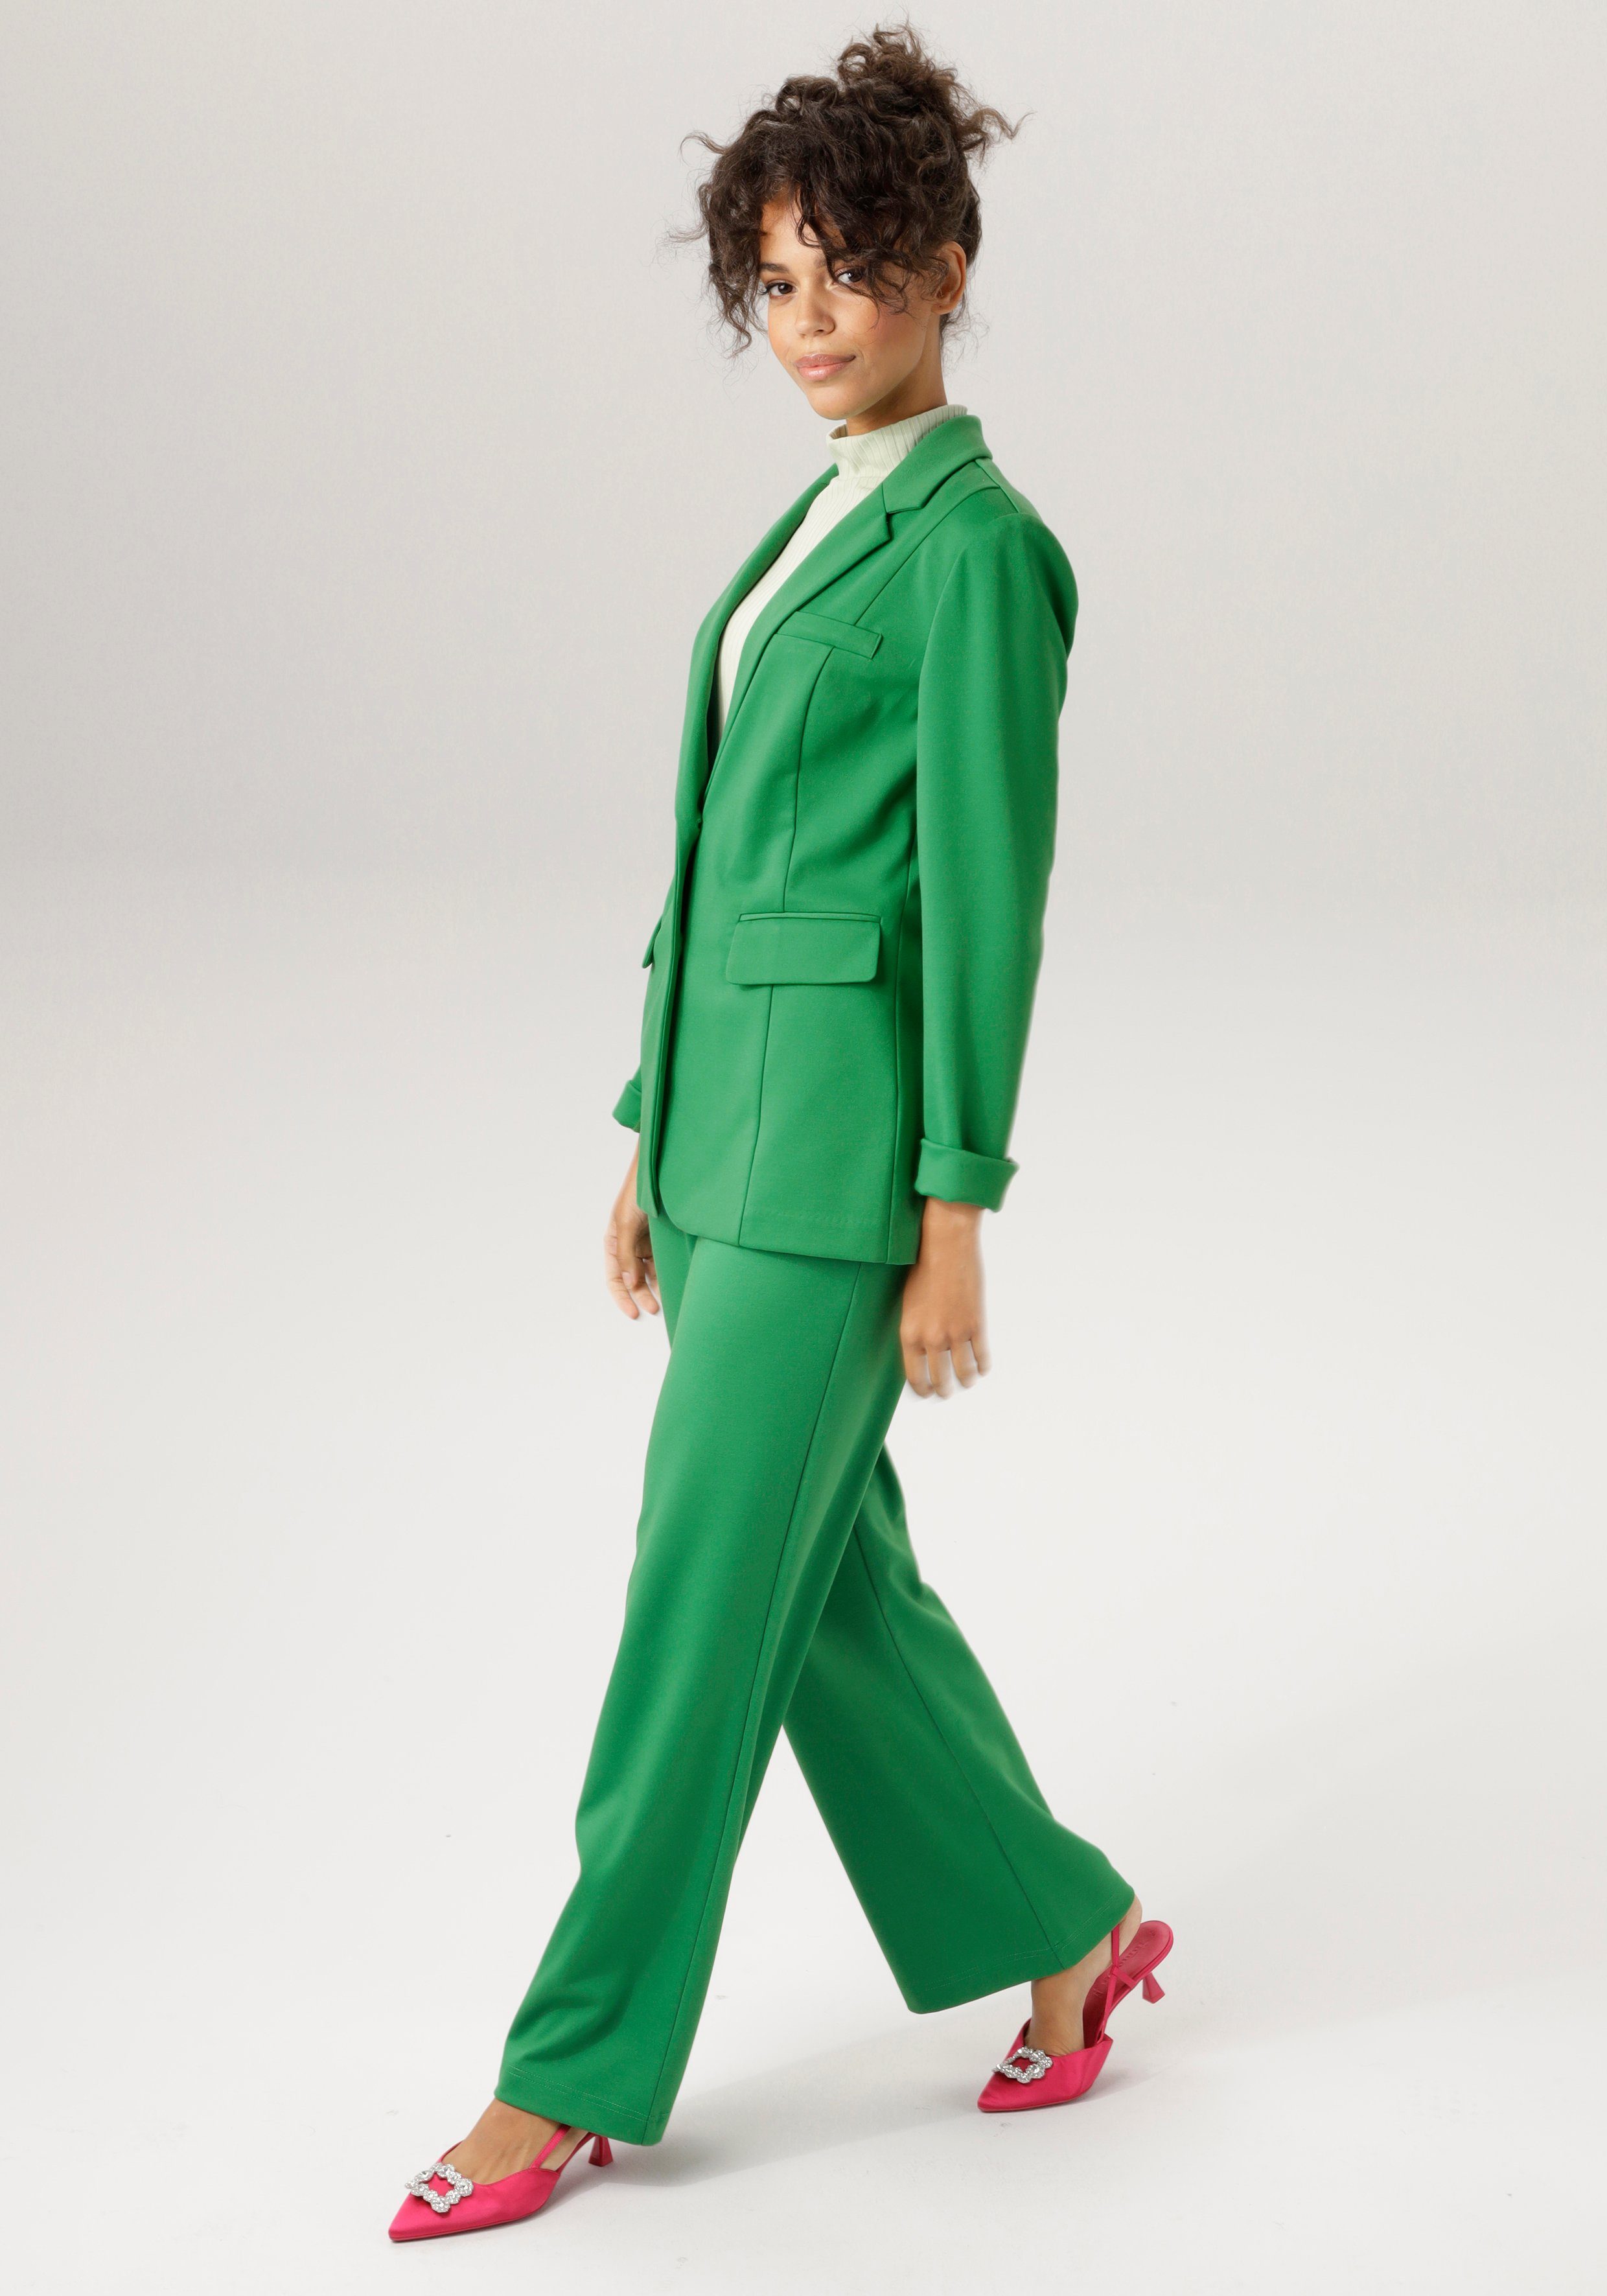 Aniston CASUAL Jackenblazer mit Reverskragen smaragd